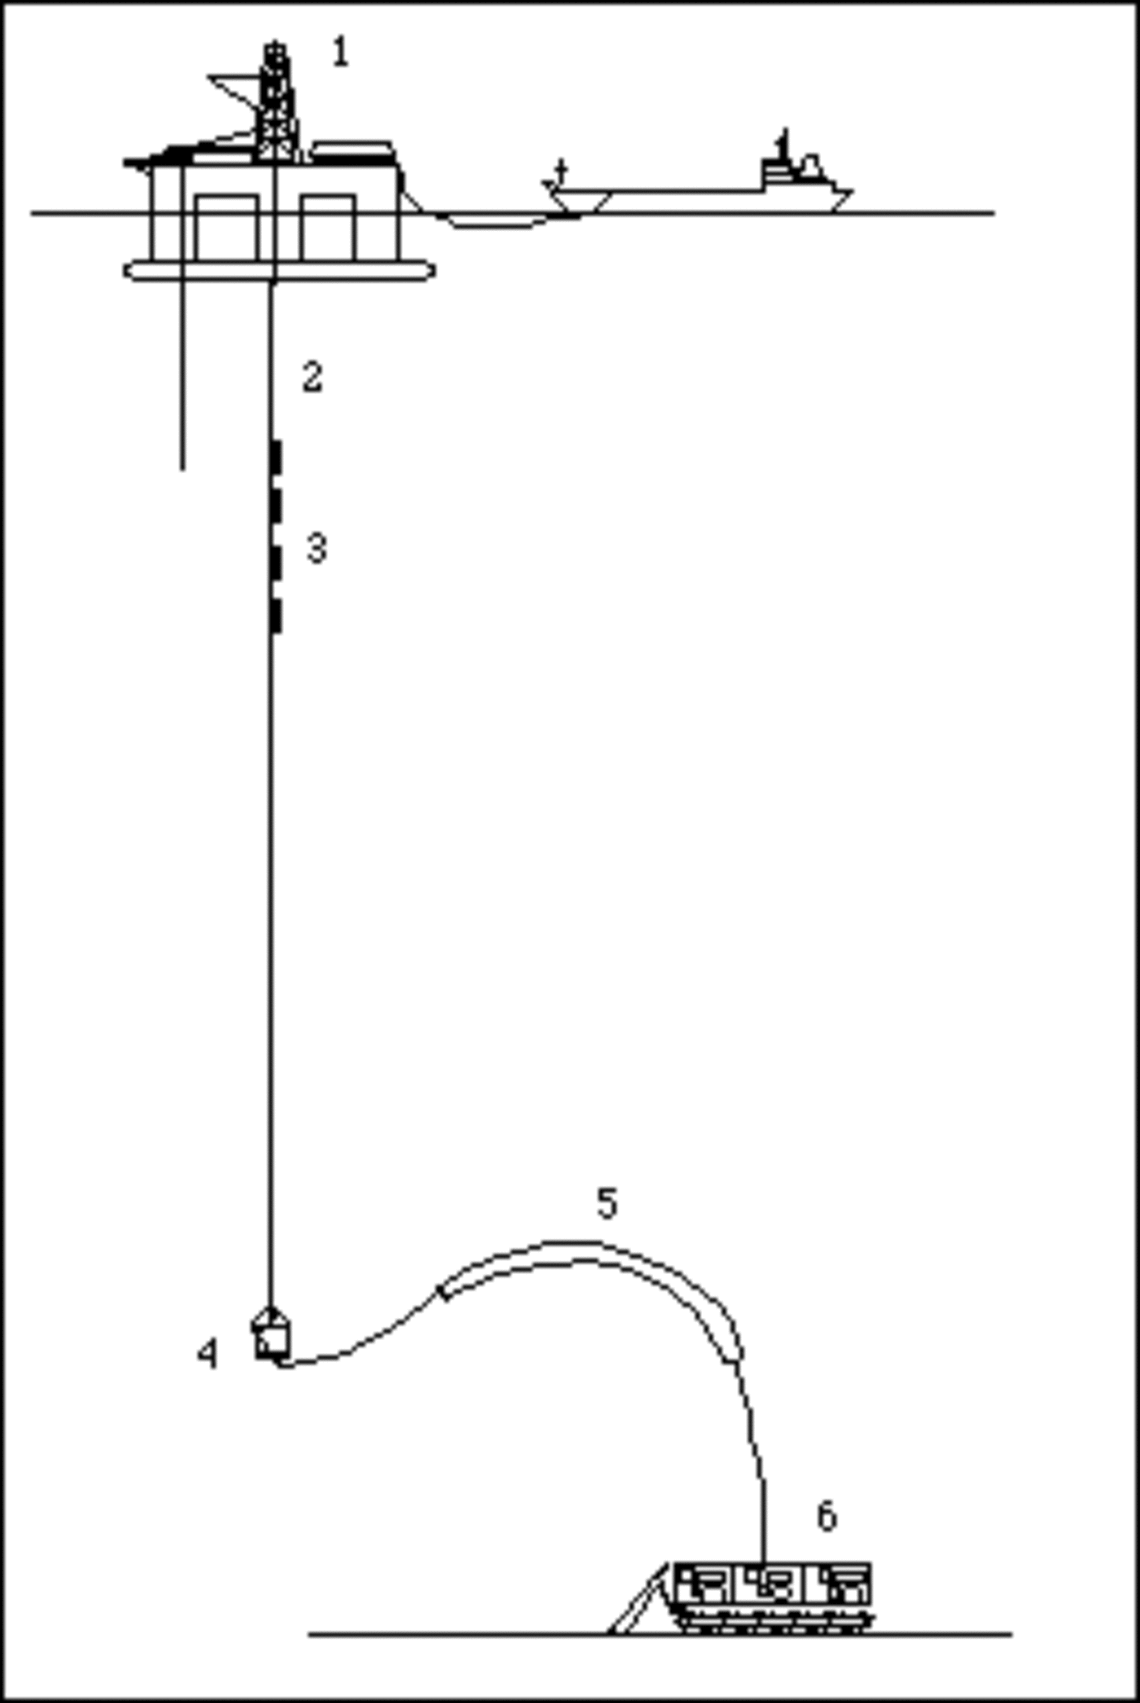 Le système Gemonod. 1: Plate-forme de surface. 2: Conduite rigide. 3: Pompes. 4: Tampon. 5: Tuyau flexible. 6: Collecteur. 